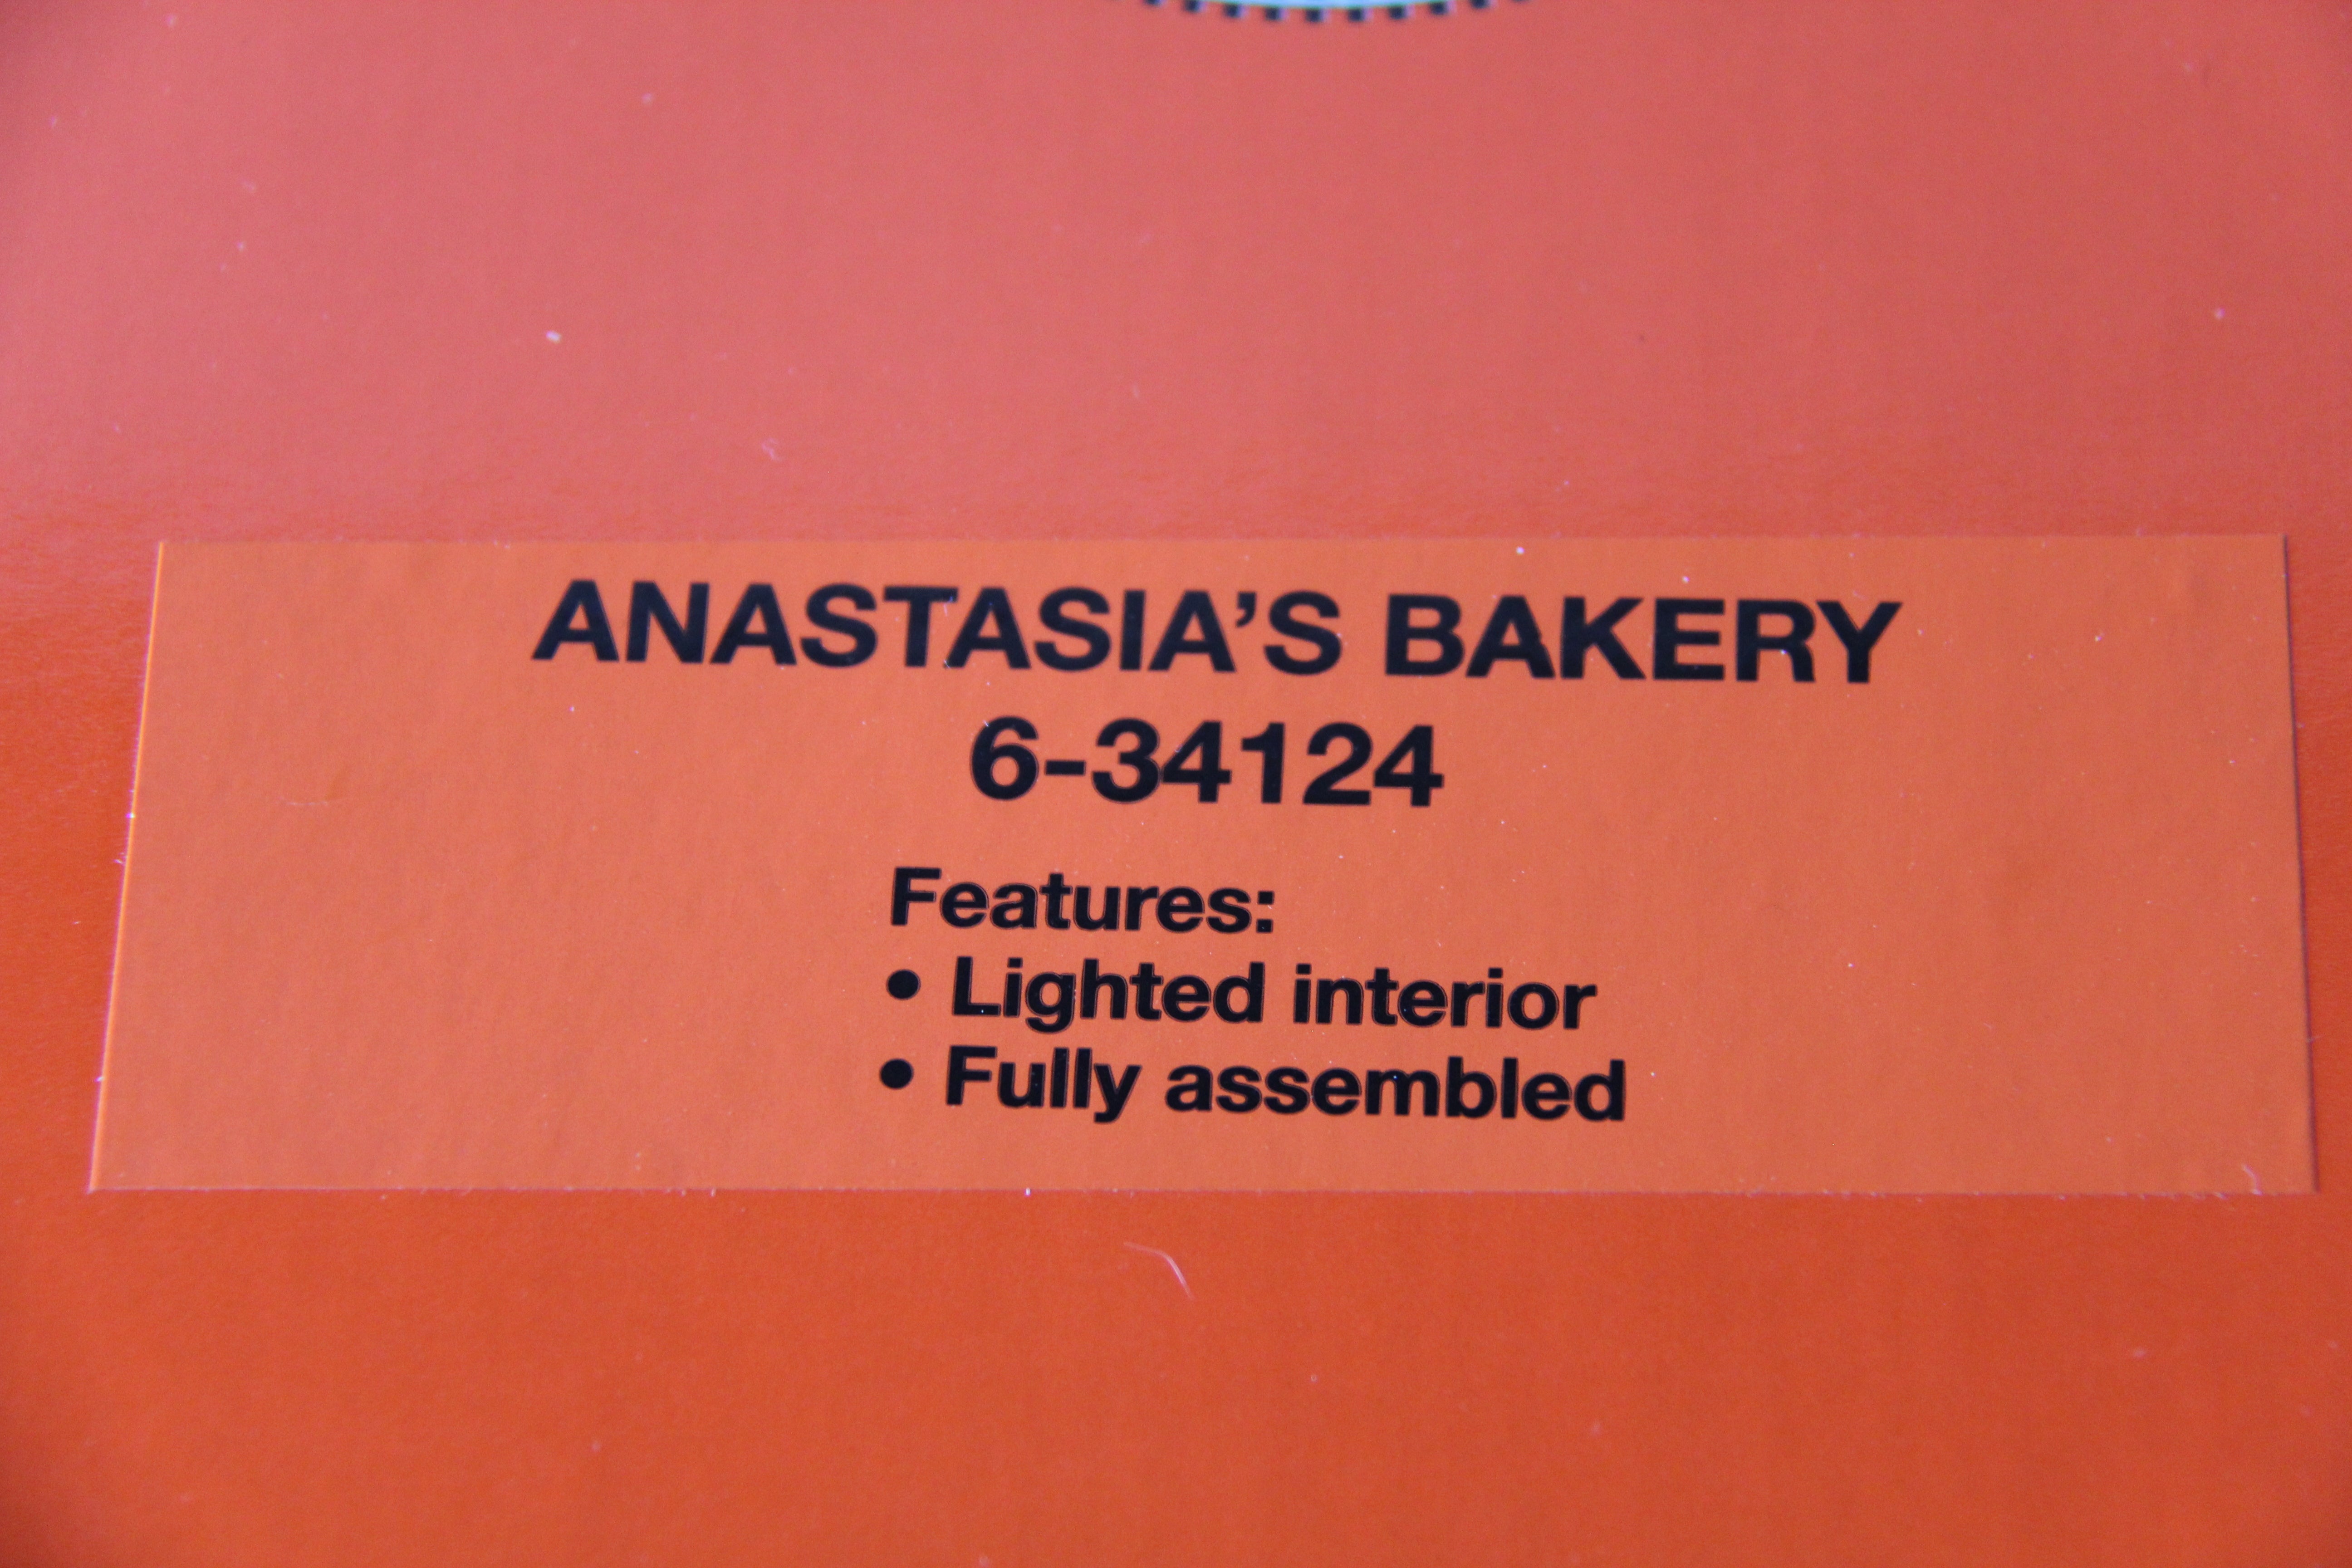 Lionel 6-34124 Anastasia's Bakery-Second hand-M2740